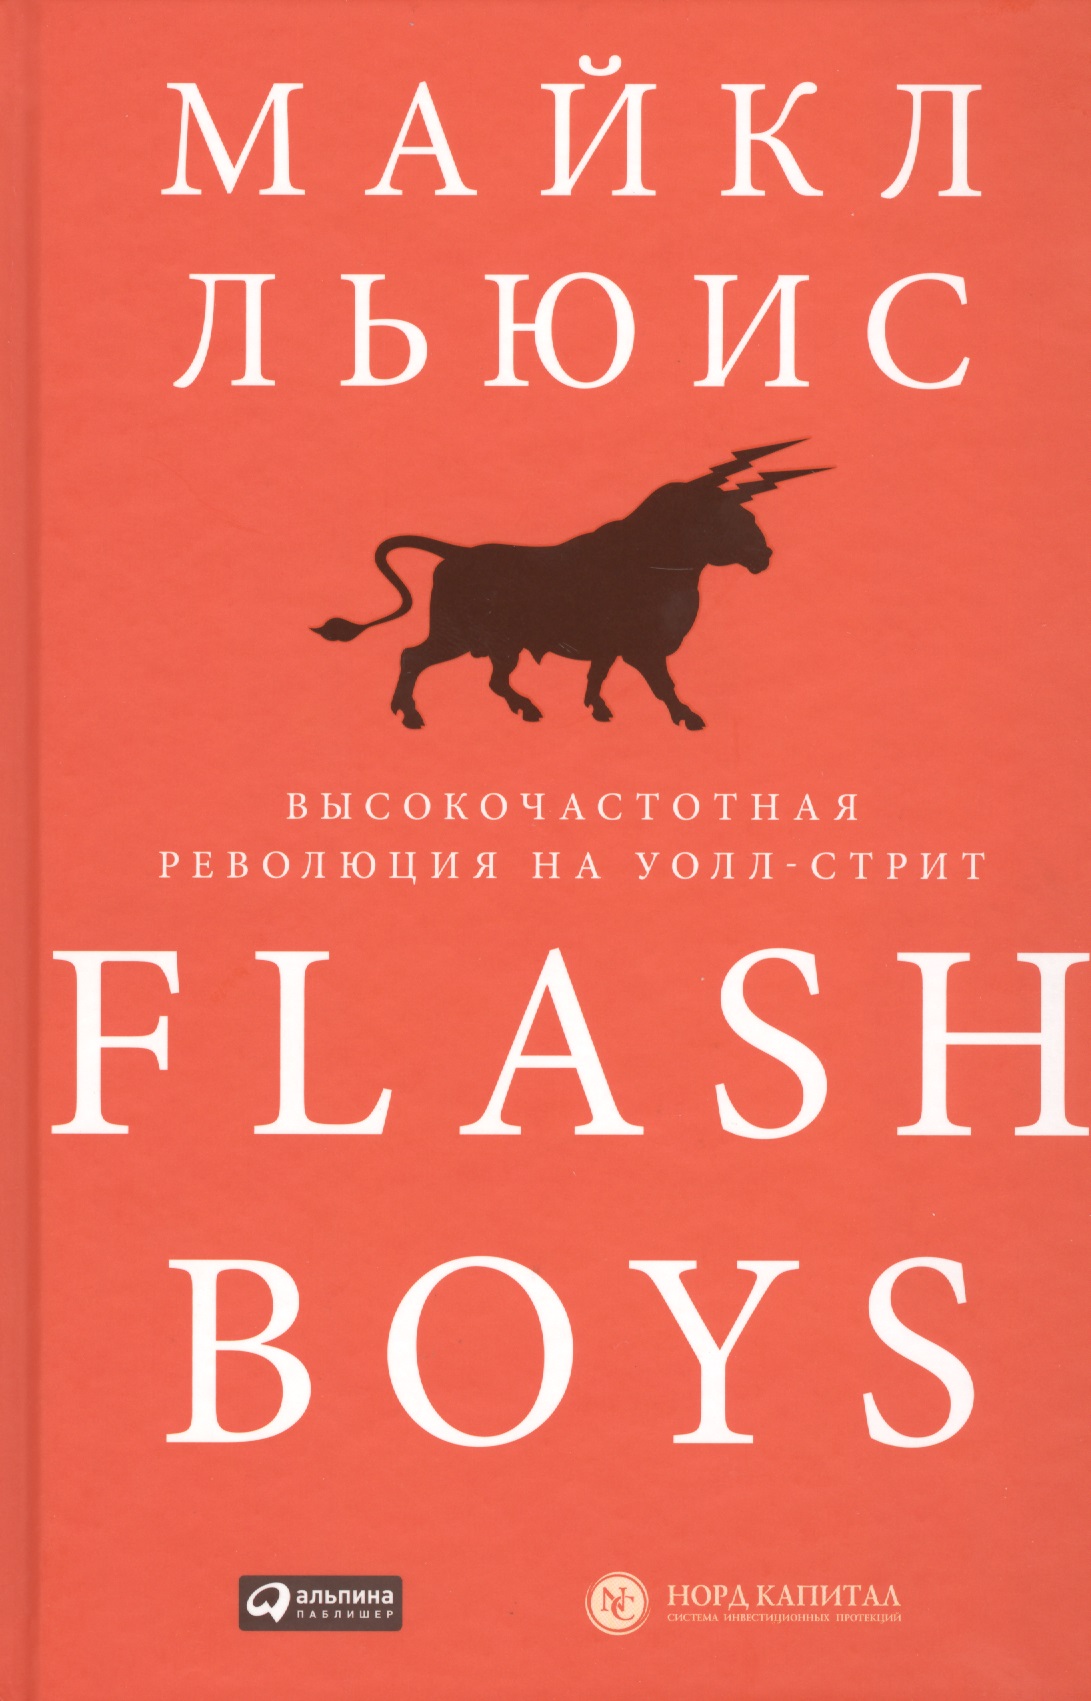 Льюис Майкл - Flash Boys: Высокочастотная революция на Уолл-стрит